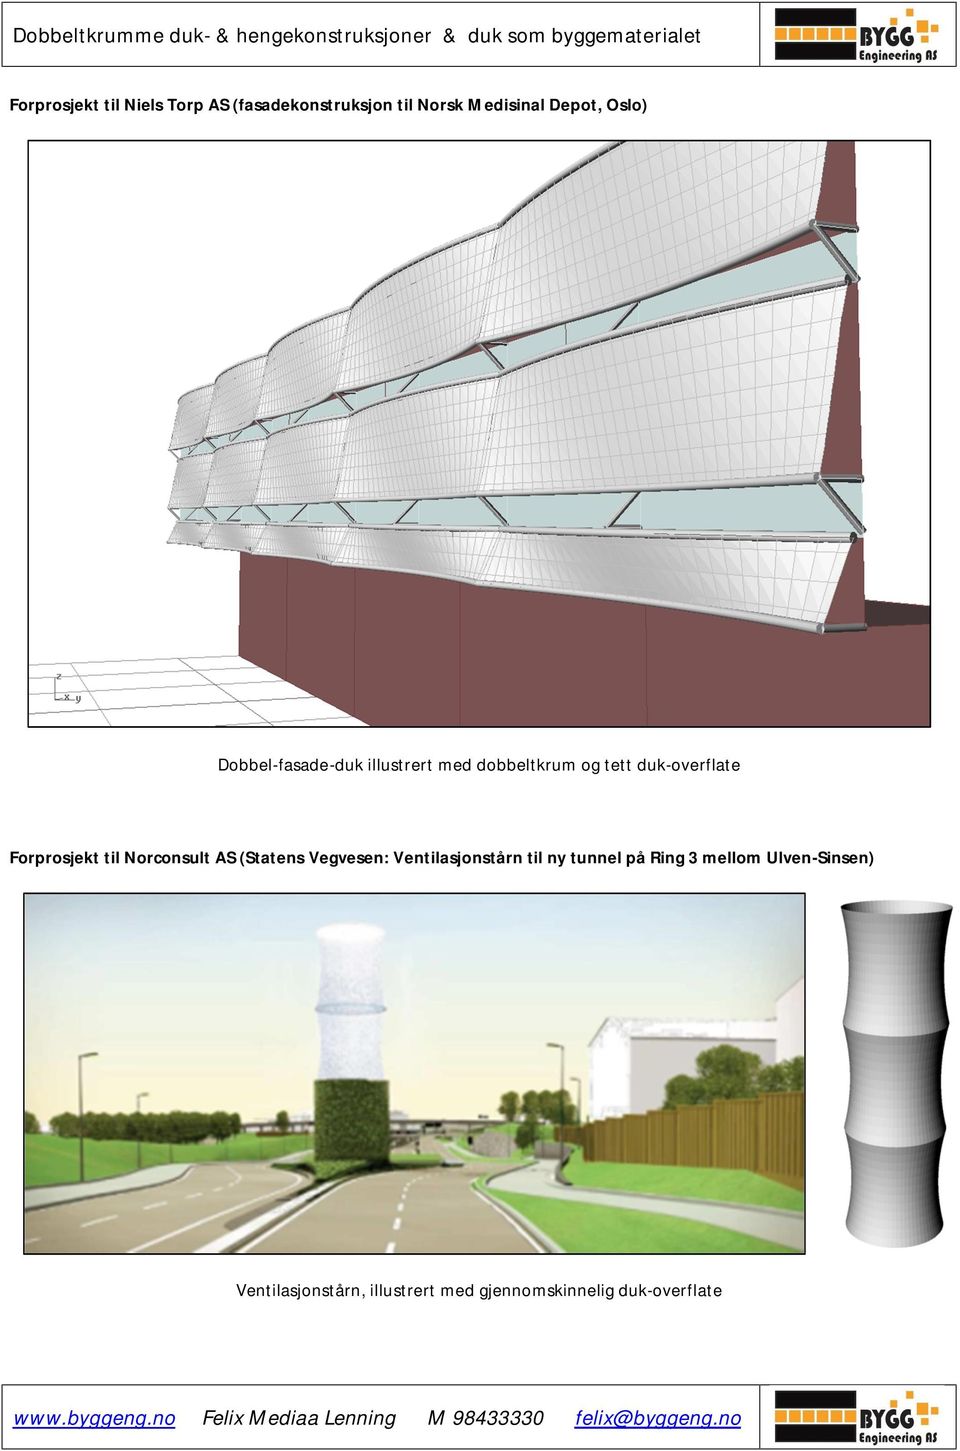 Forprosjekt til Norconsult AS (Statens Vegvesen: Ventilasjonstårn til ny tunnel